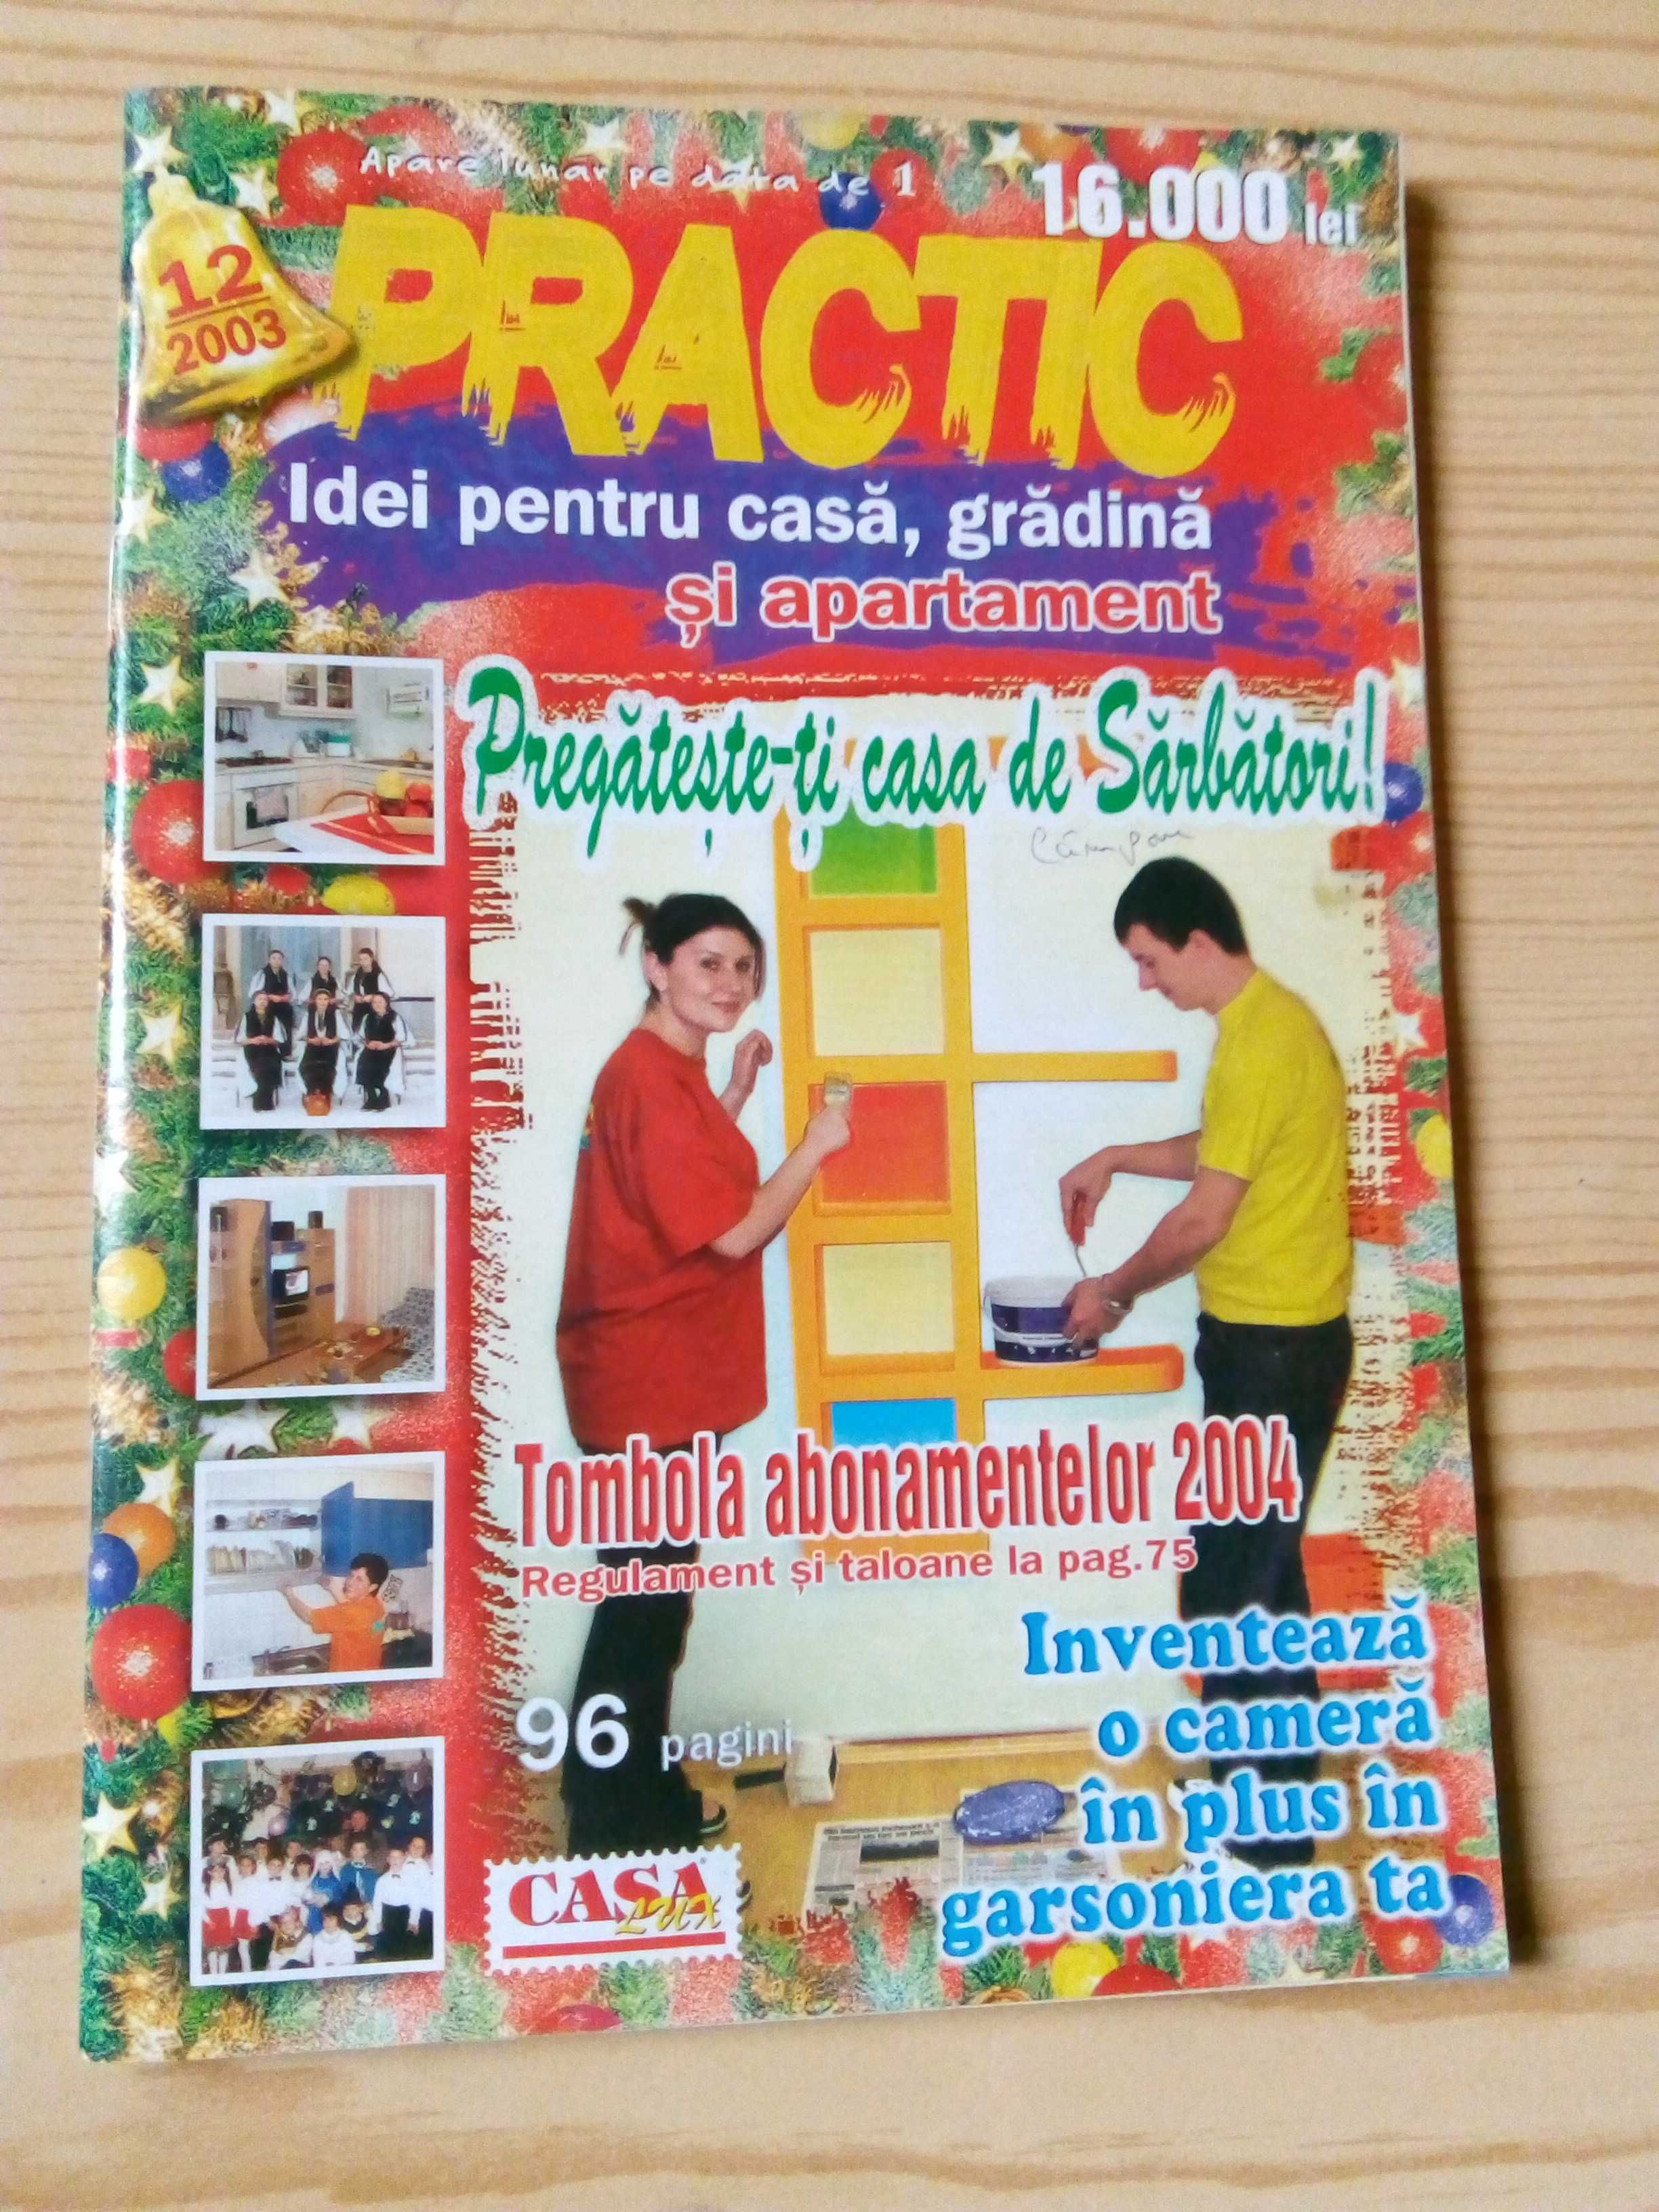 Revista Practic - Idei pentru casă, grădină și apartament.